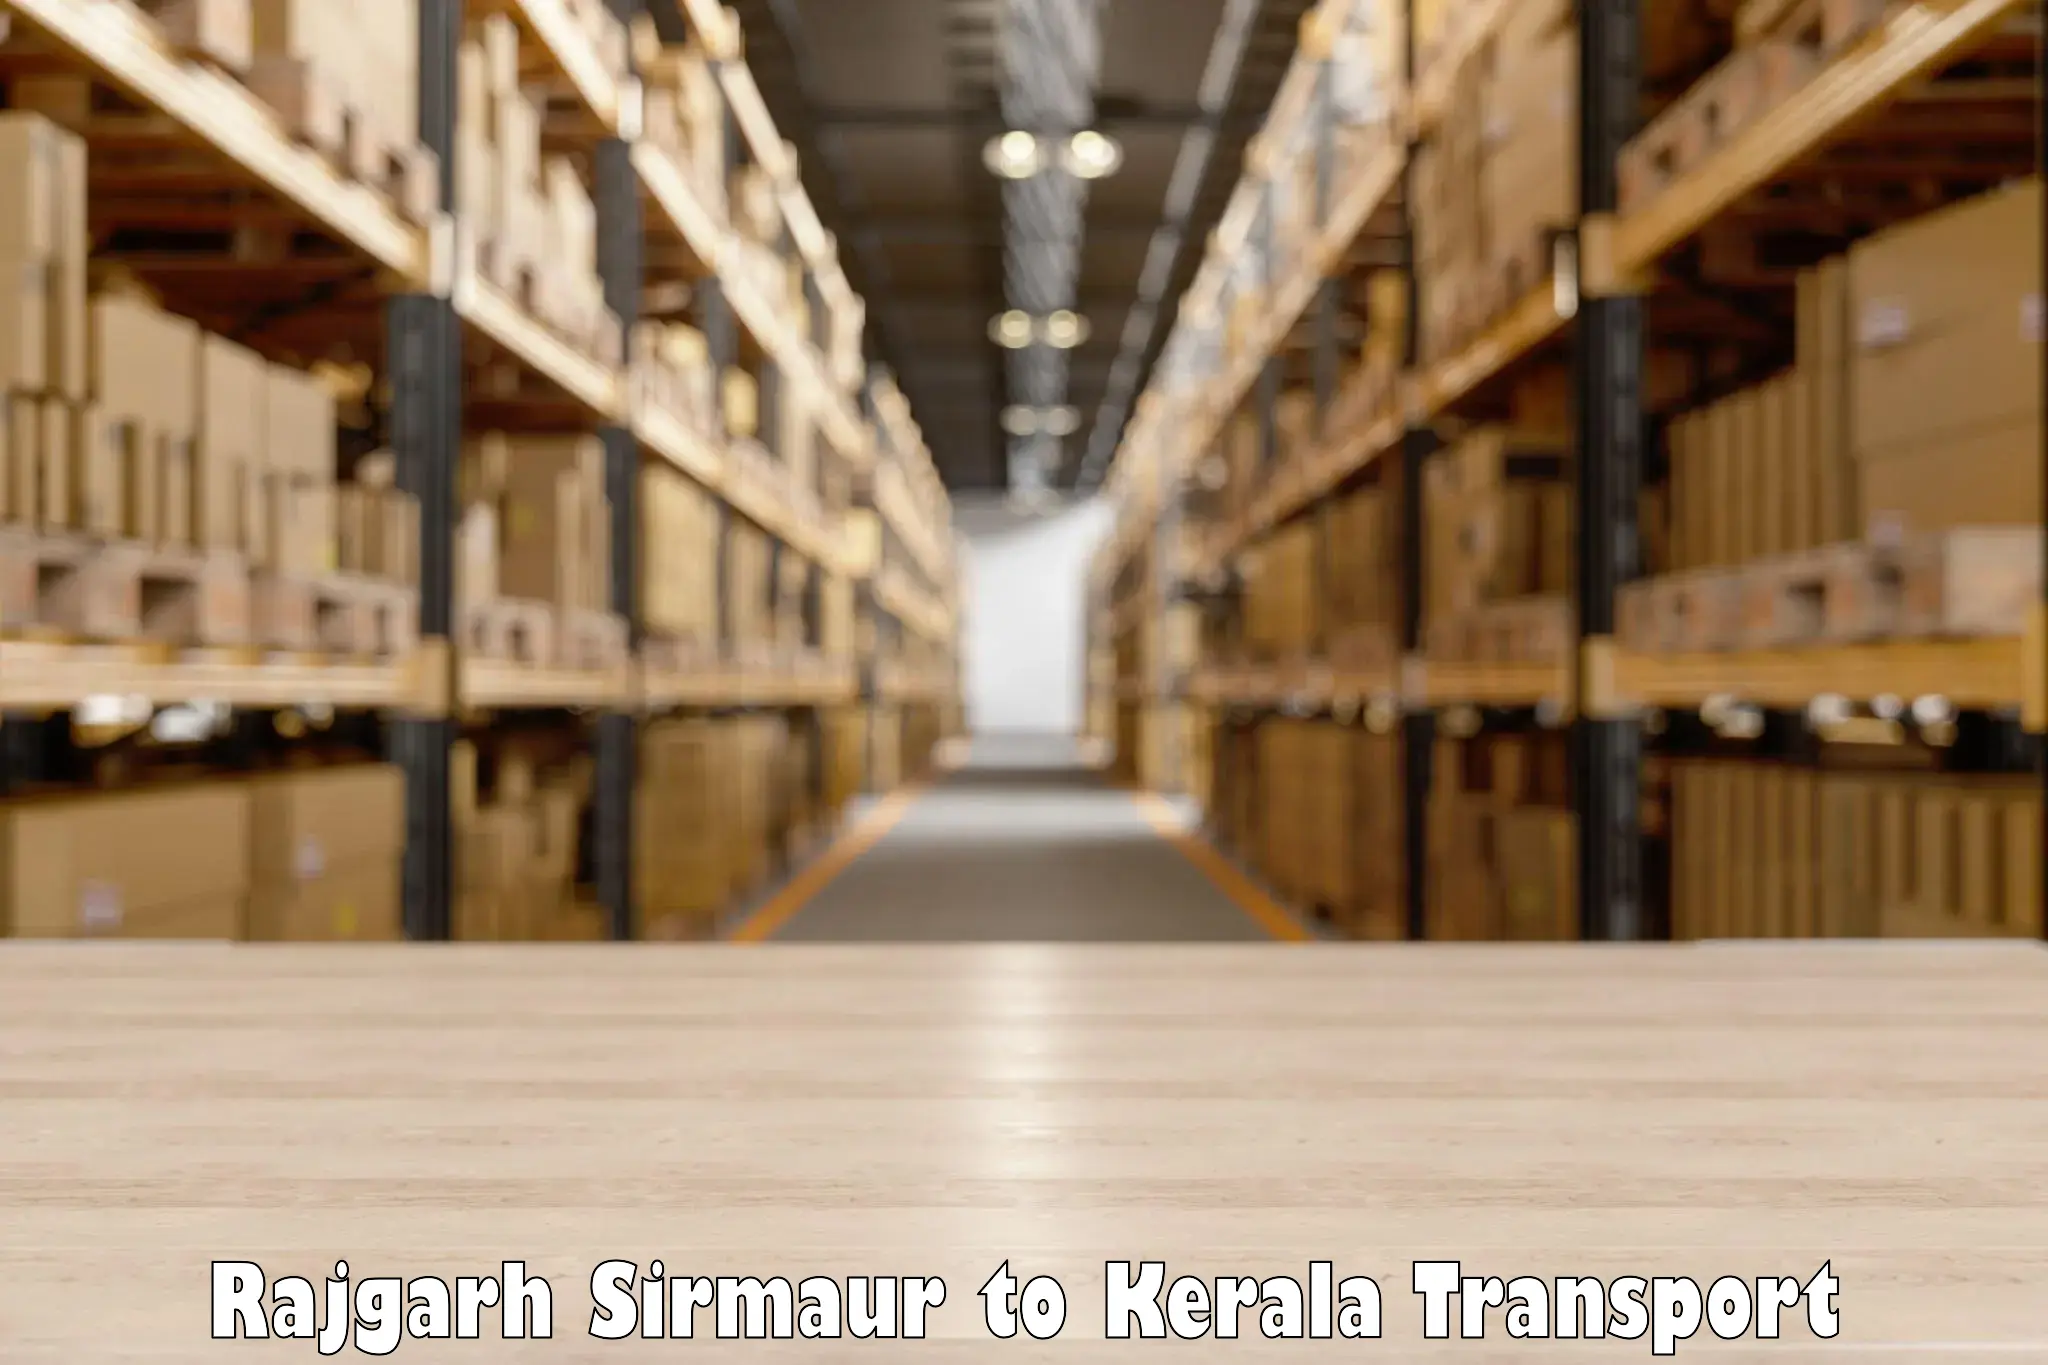 Vehicle transport services in Rajgarh Sirmaur to Kothamangalam